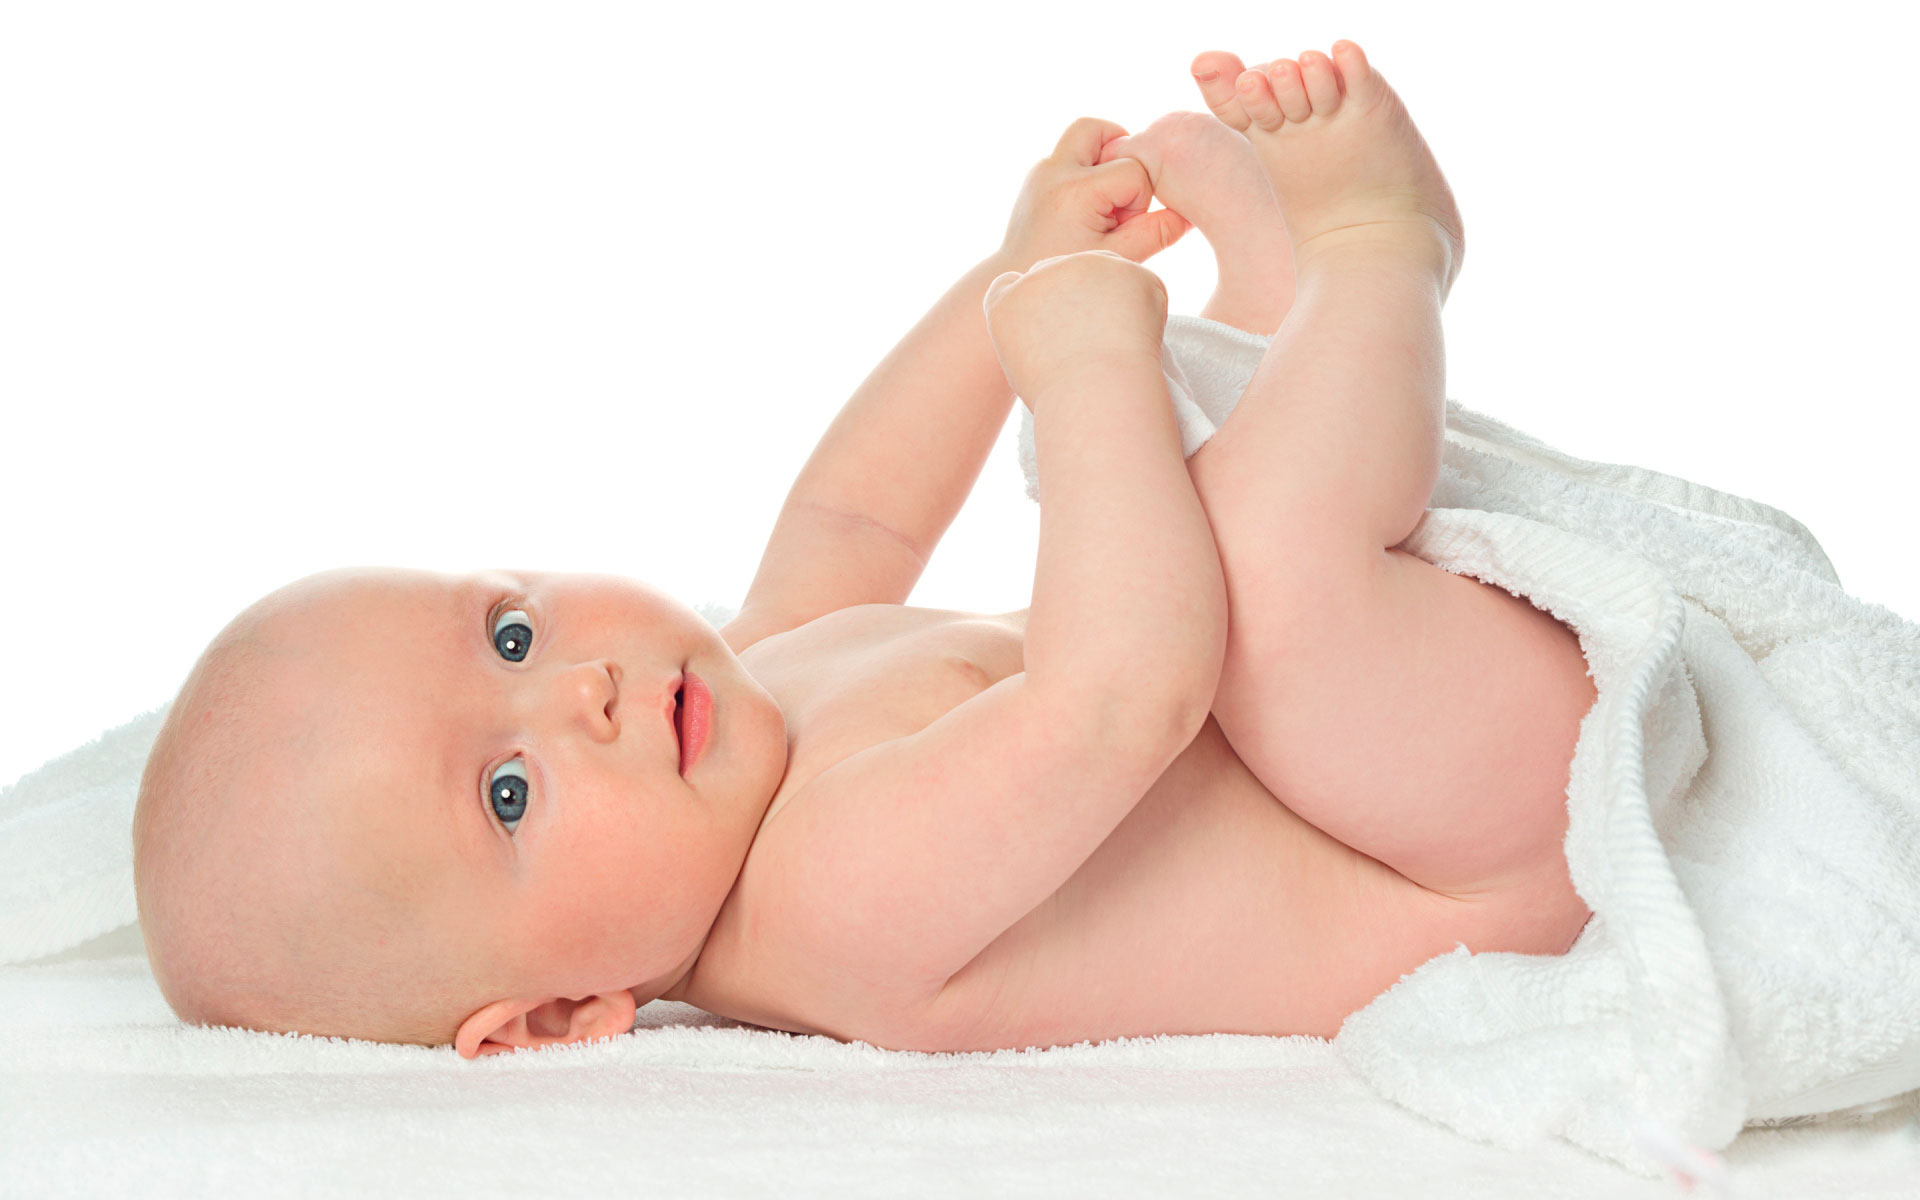 Bioskin Junior Крем и Спрей за Бебета и Деца помага при много суха кожа, дерматит, екзема, псориазис.